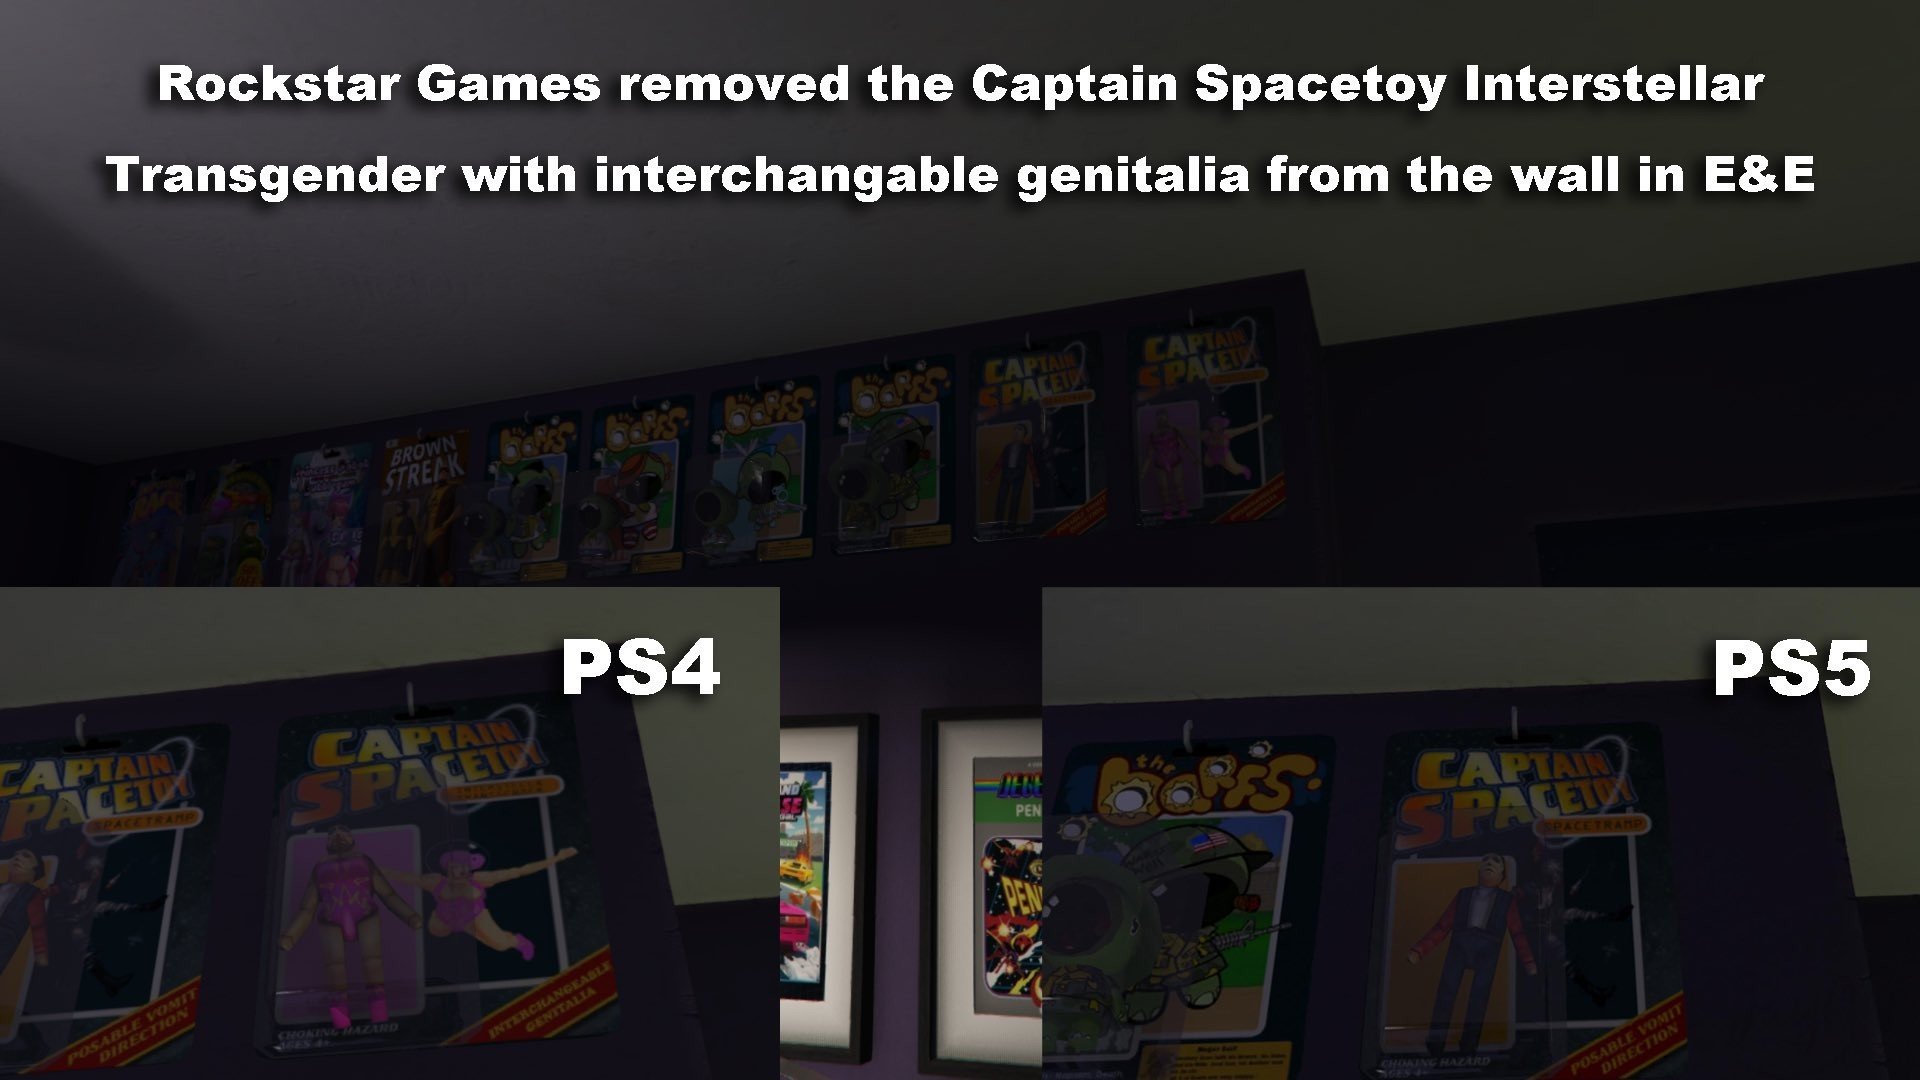 Rockstar втихую удалила спорный контент из некстгенверсии GTA 5